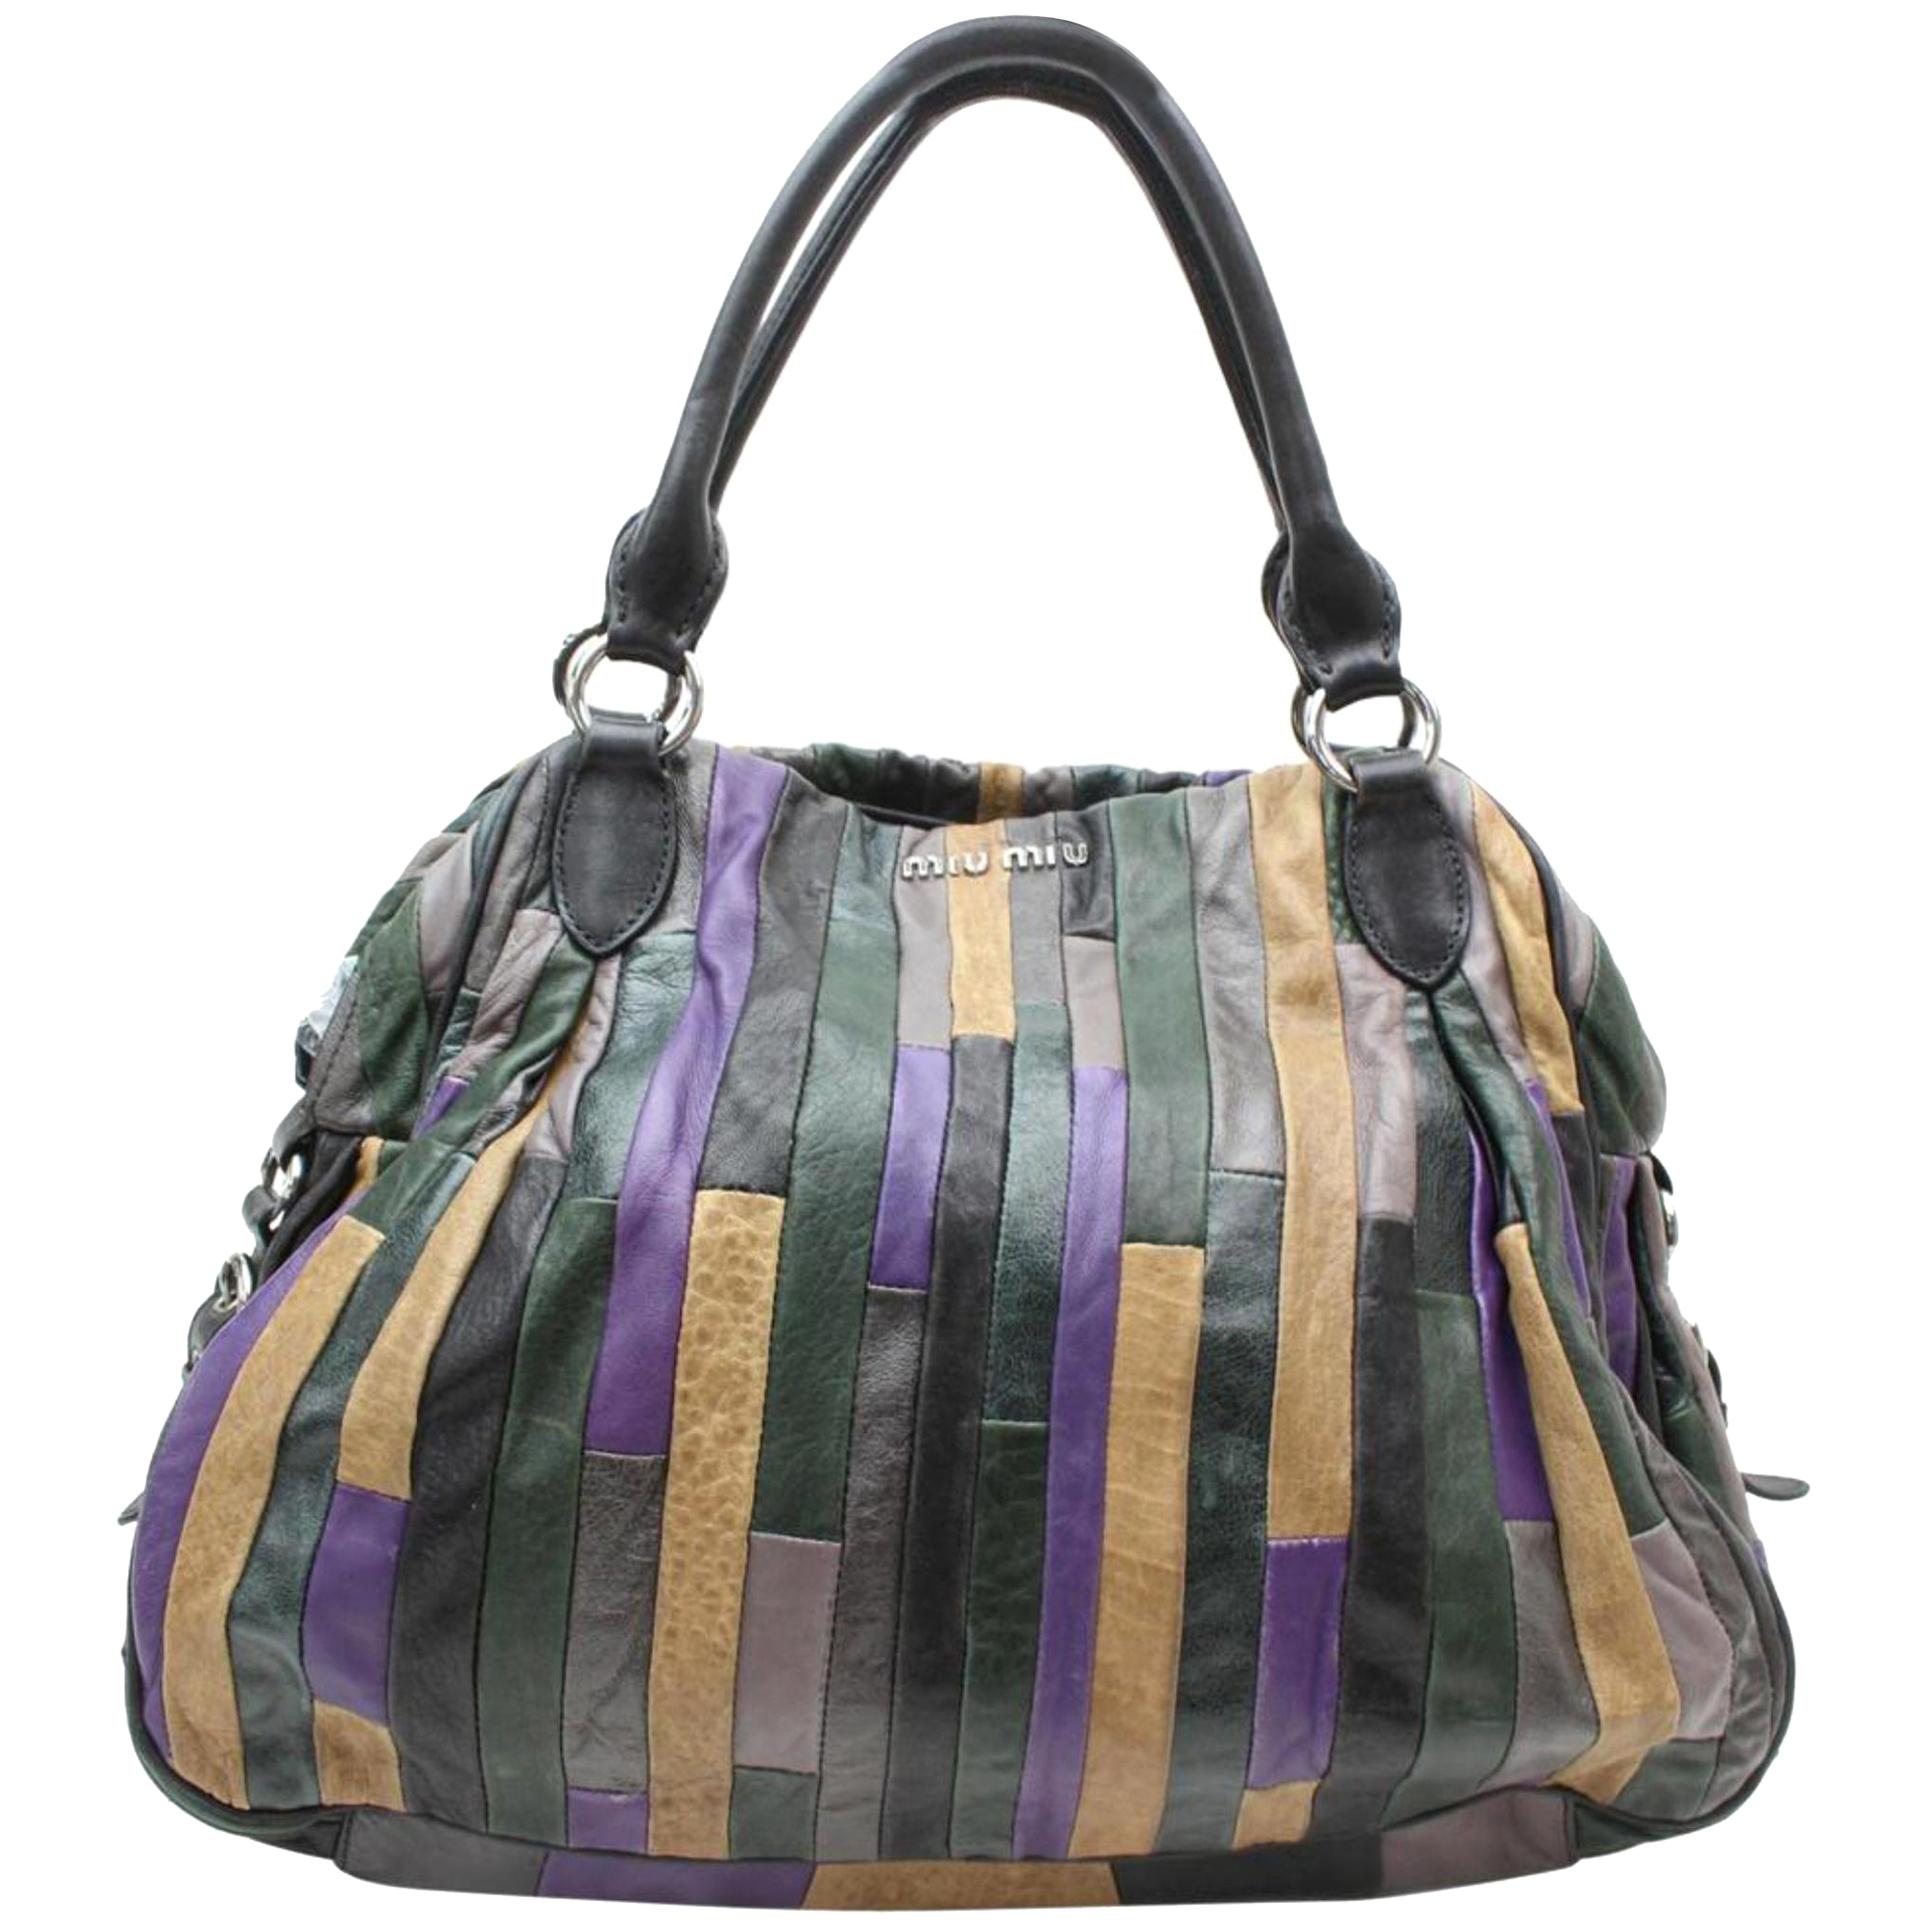 Miu Miu Patchwork Hobo 869478 Multi Color Leather Shoulder Bag For Sale